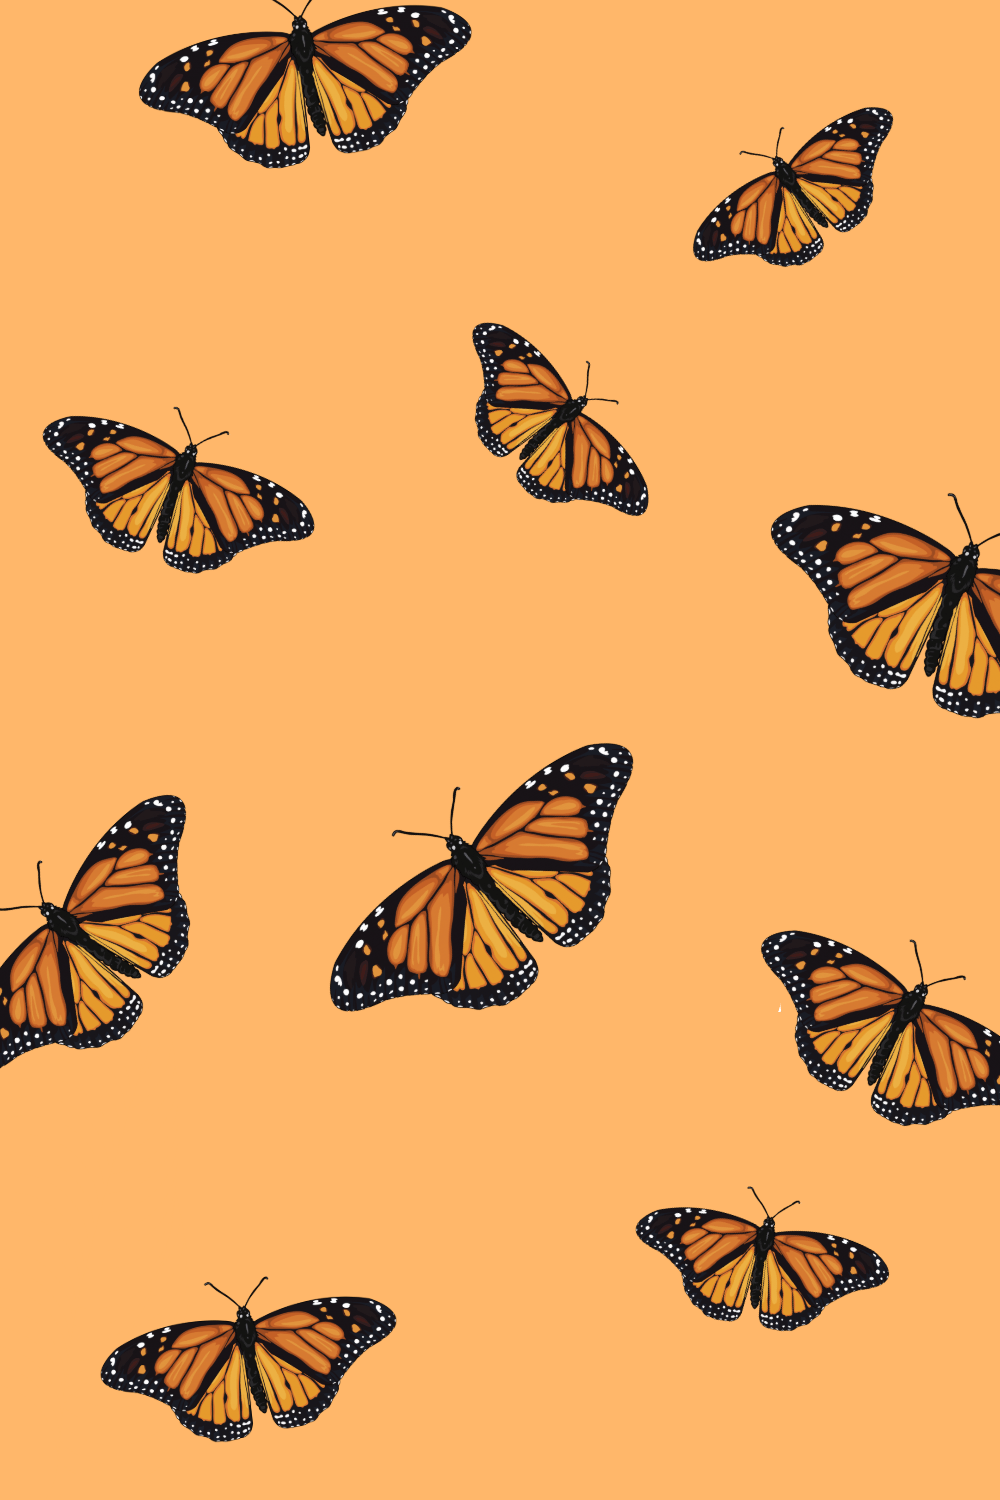 Bạn muốn thay đổi hình nền điện thoại của mình với một bộ sưu tập hình ảnh độc đáo? Hãy thử với bộ sưu tập Hình nền bướm cam thẩm mỹ. Với những hình ảnh tuyệt đẹp và sắc nét về bướm cam thu hút sự chú ý của mọi người. Hãy xem hình ảnh này để tìm kiếm hình nền đẹp nhất cho điện thoại của bạn.